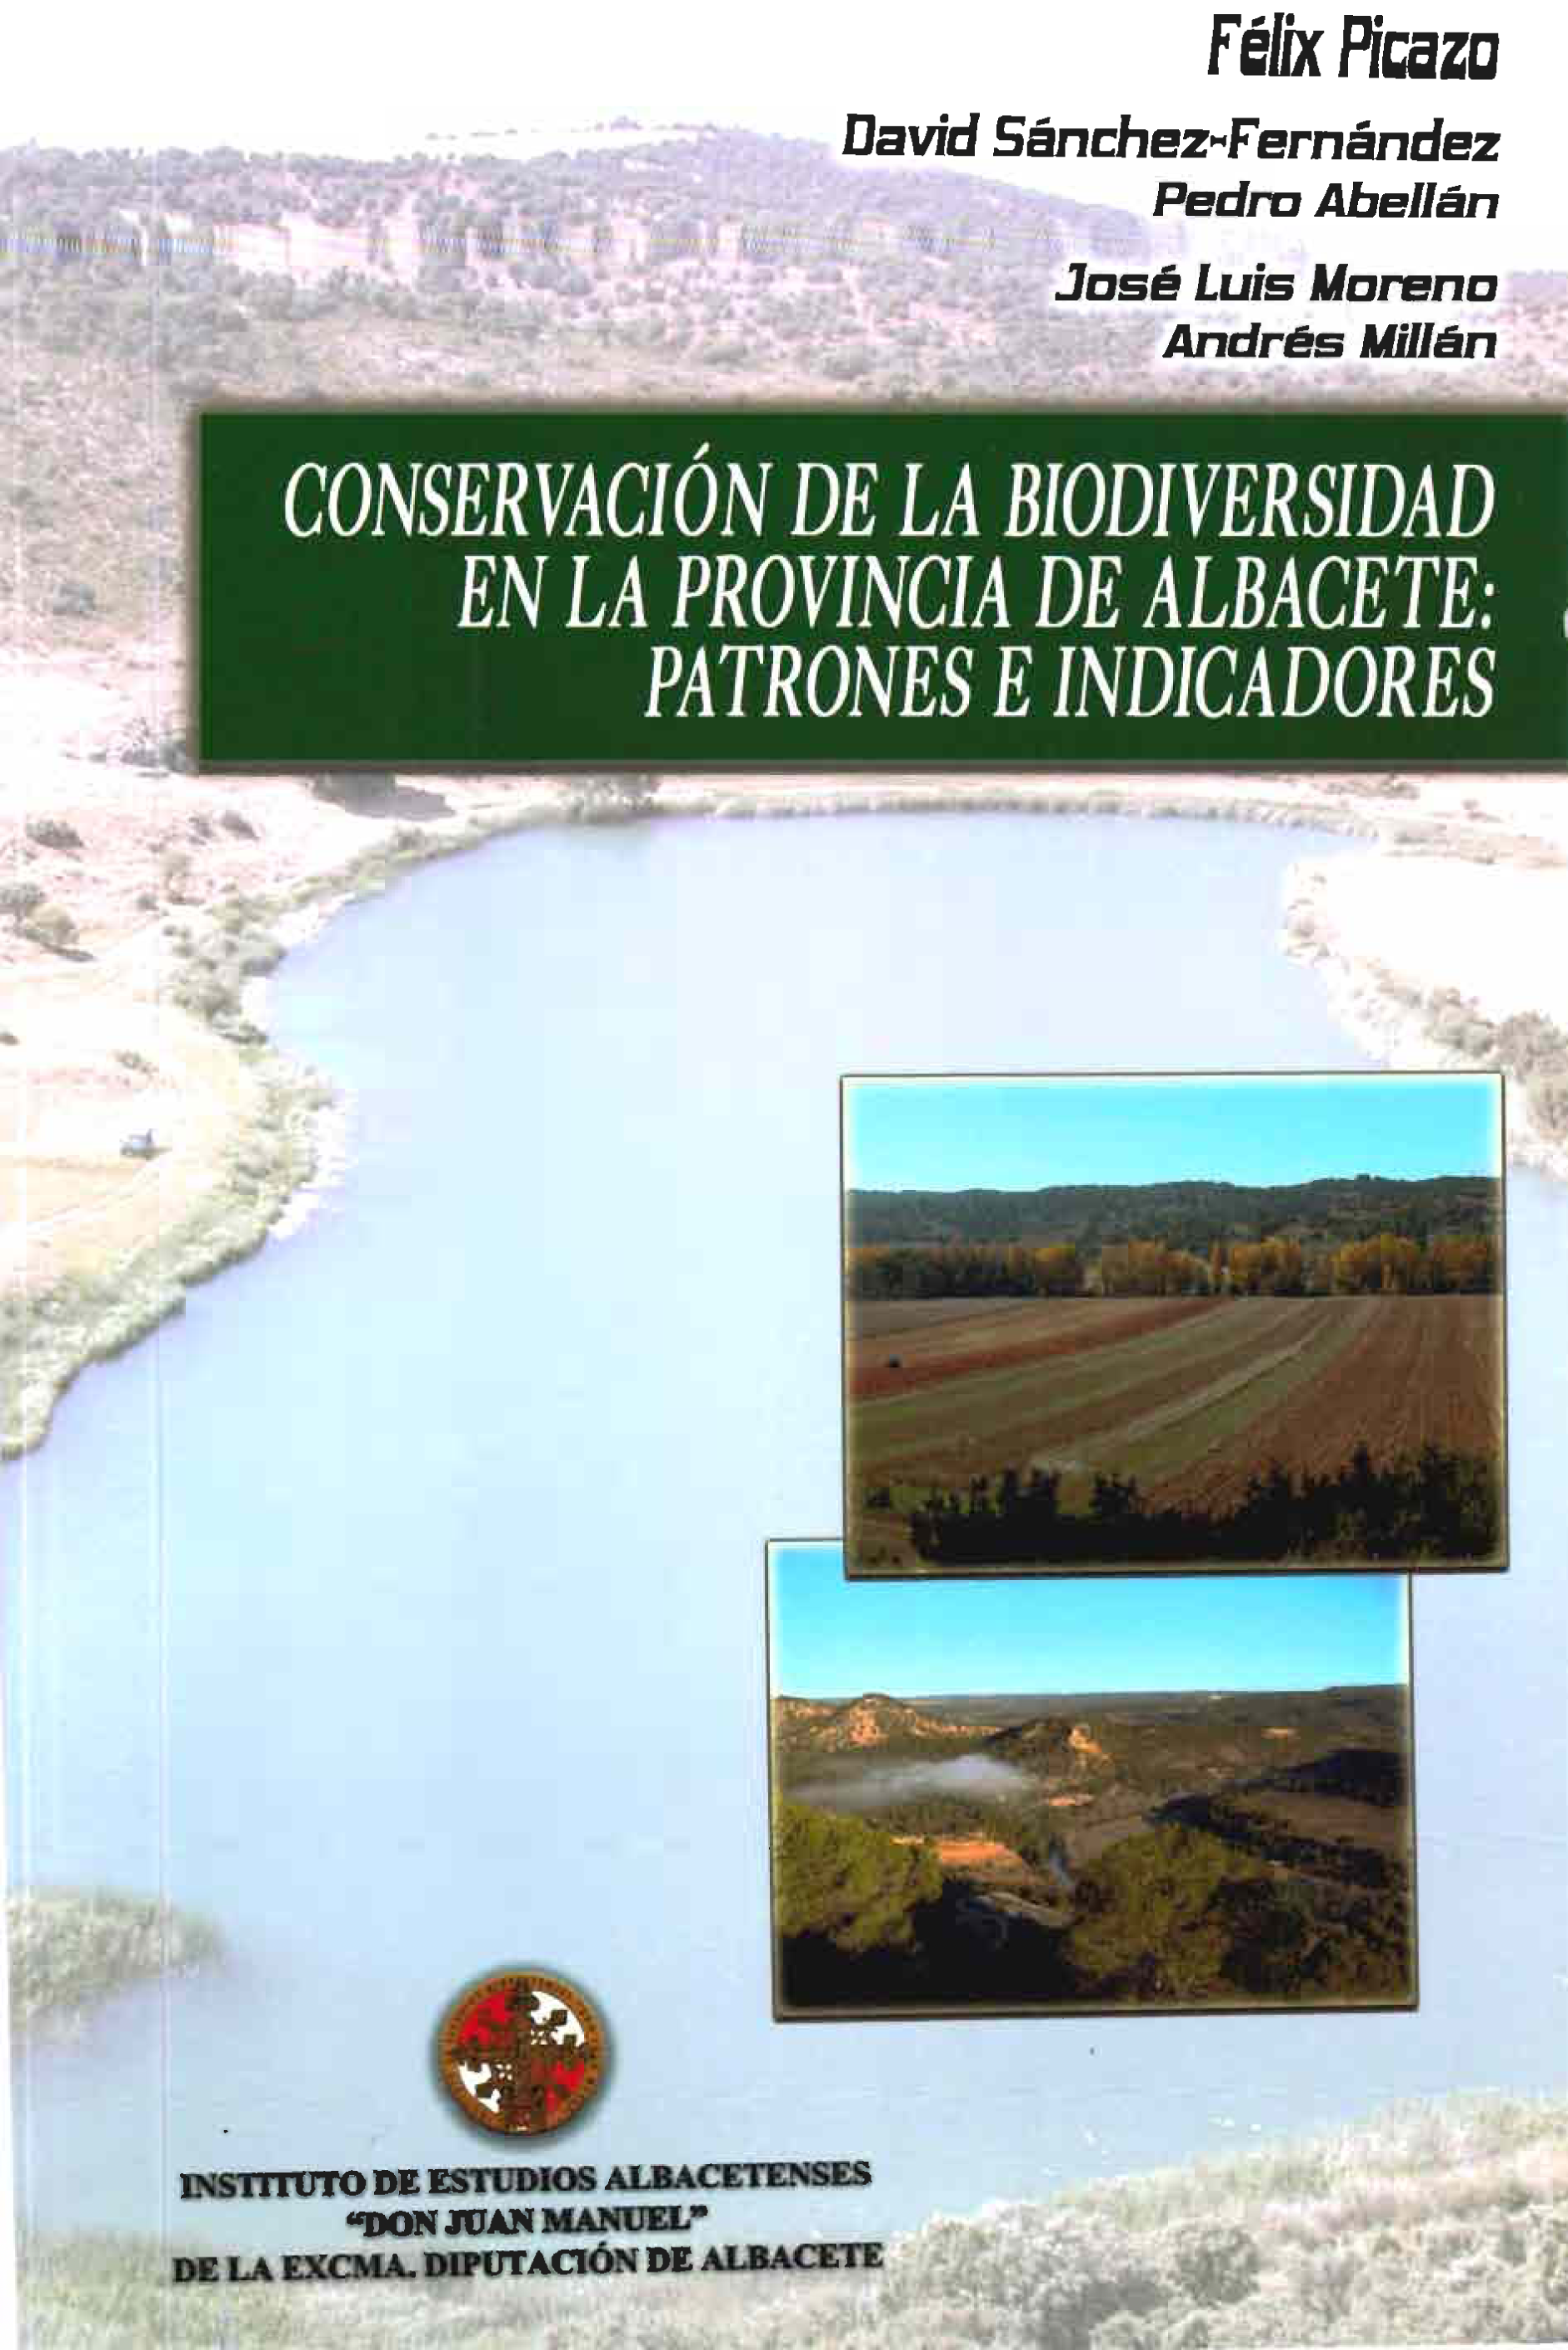 Imagen de portada del libro Conservación de la biodiversidad en la provincia de Albacete